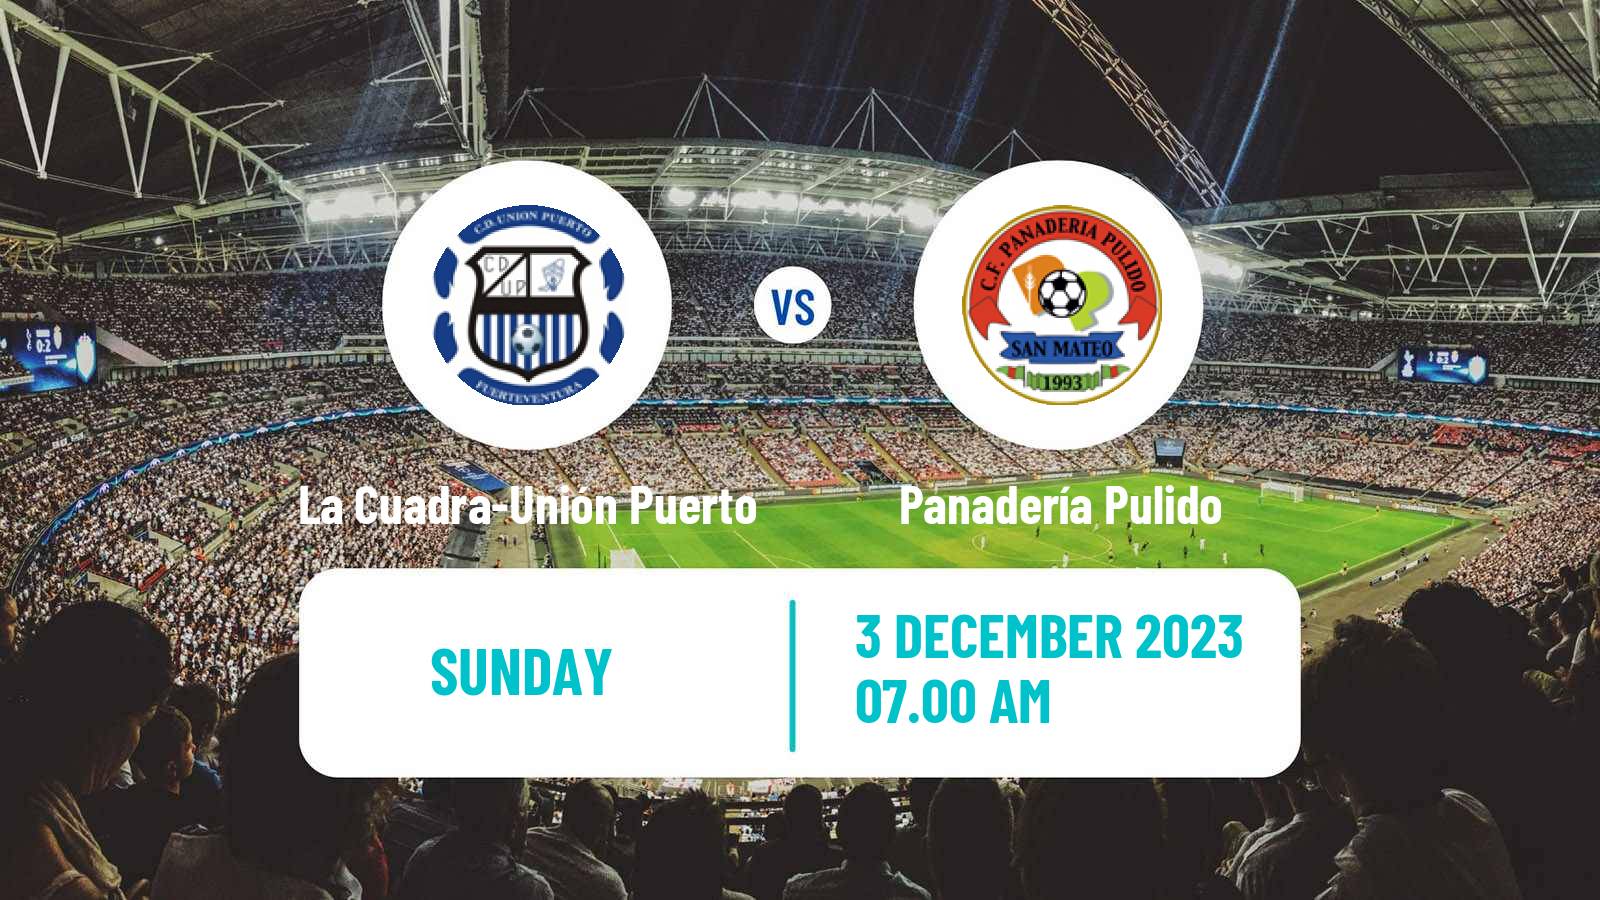 Soccer Spanish Tercera RFEF - Group 12 La Cuadra-Unión Puerto - Panadería Pulido